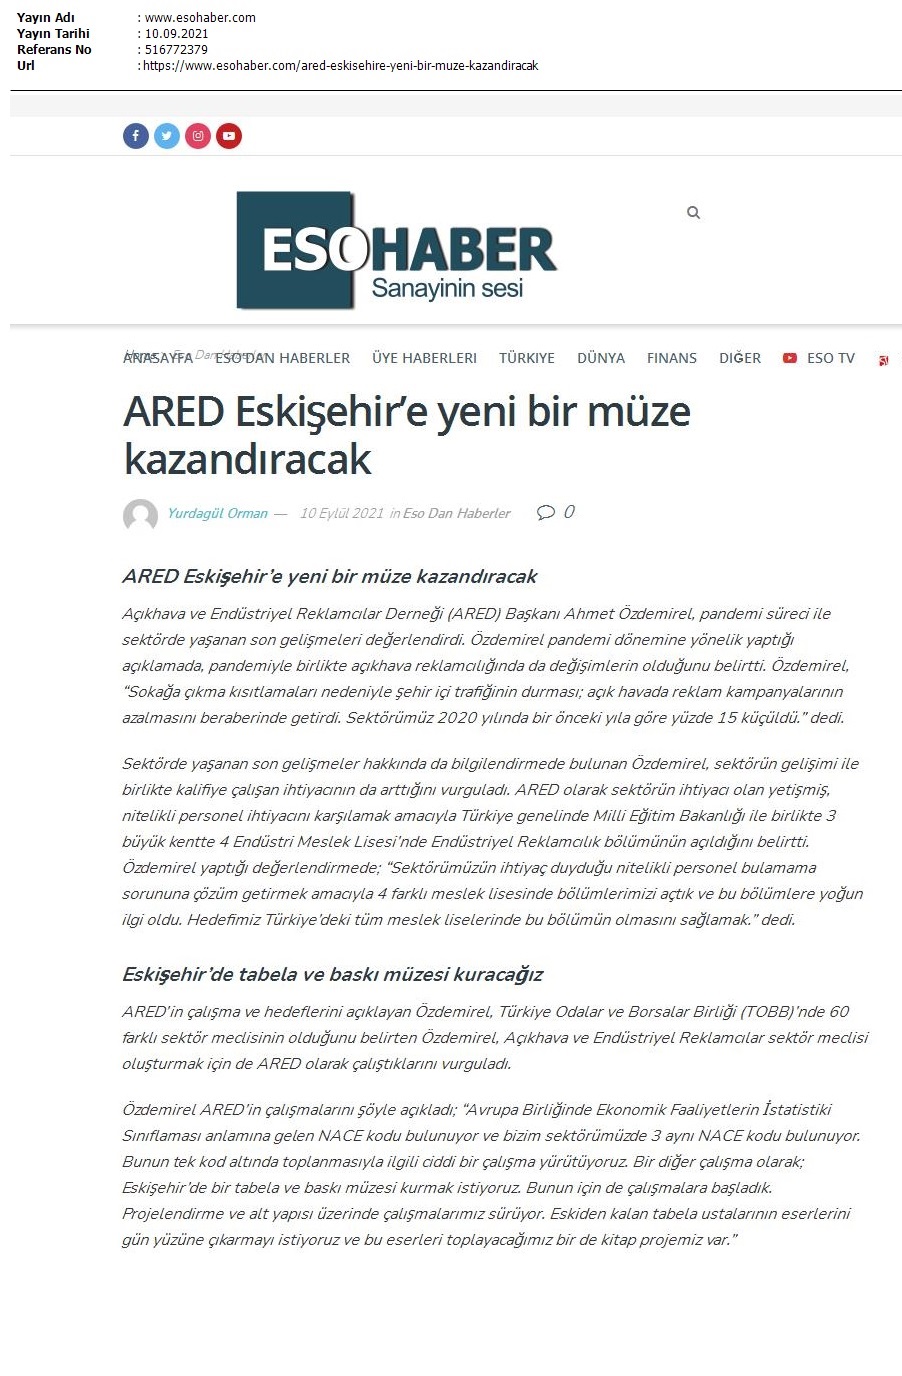 ARED, Eskişehir'de tabela ve baskı müzesi açacak